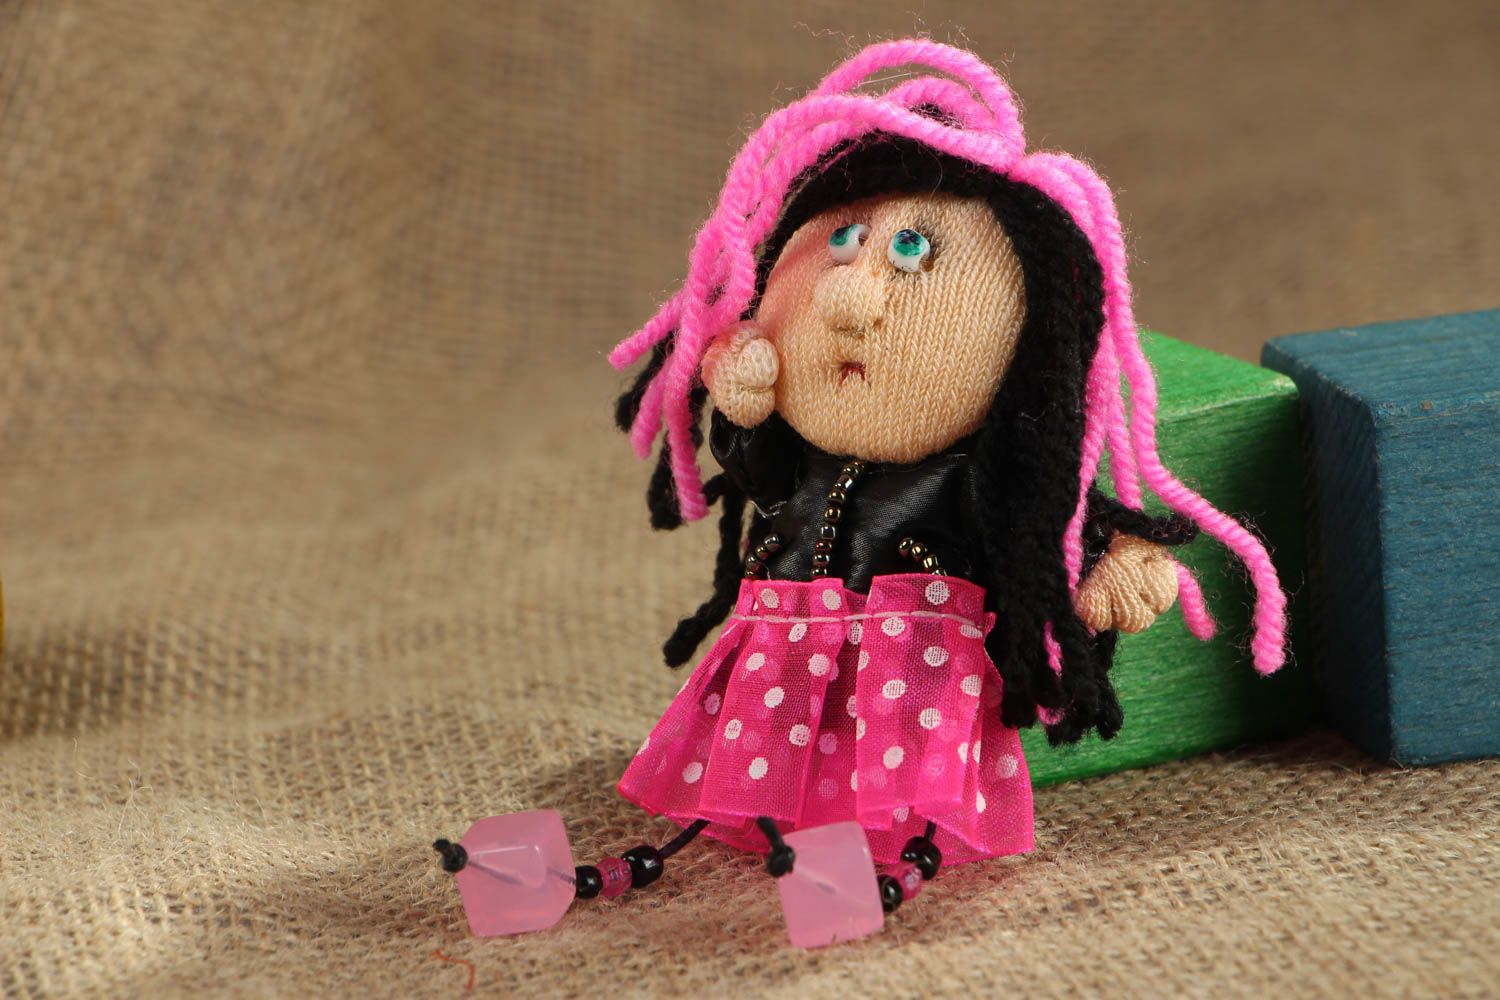 Текстильная брошь для девочки в виде куклы эмо фото 5